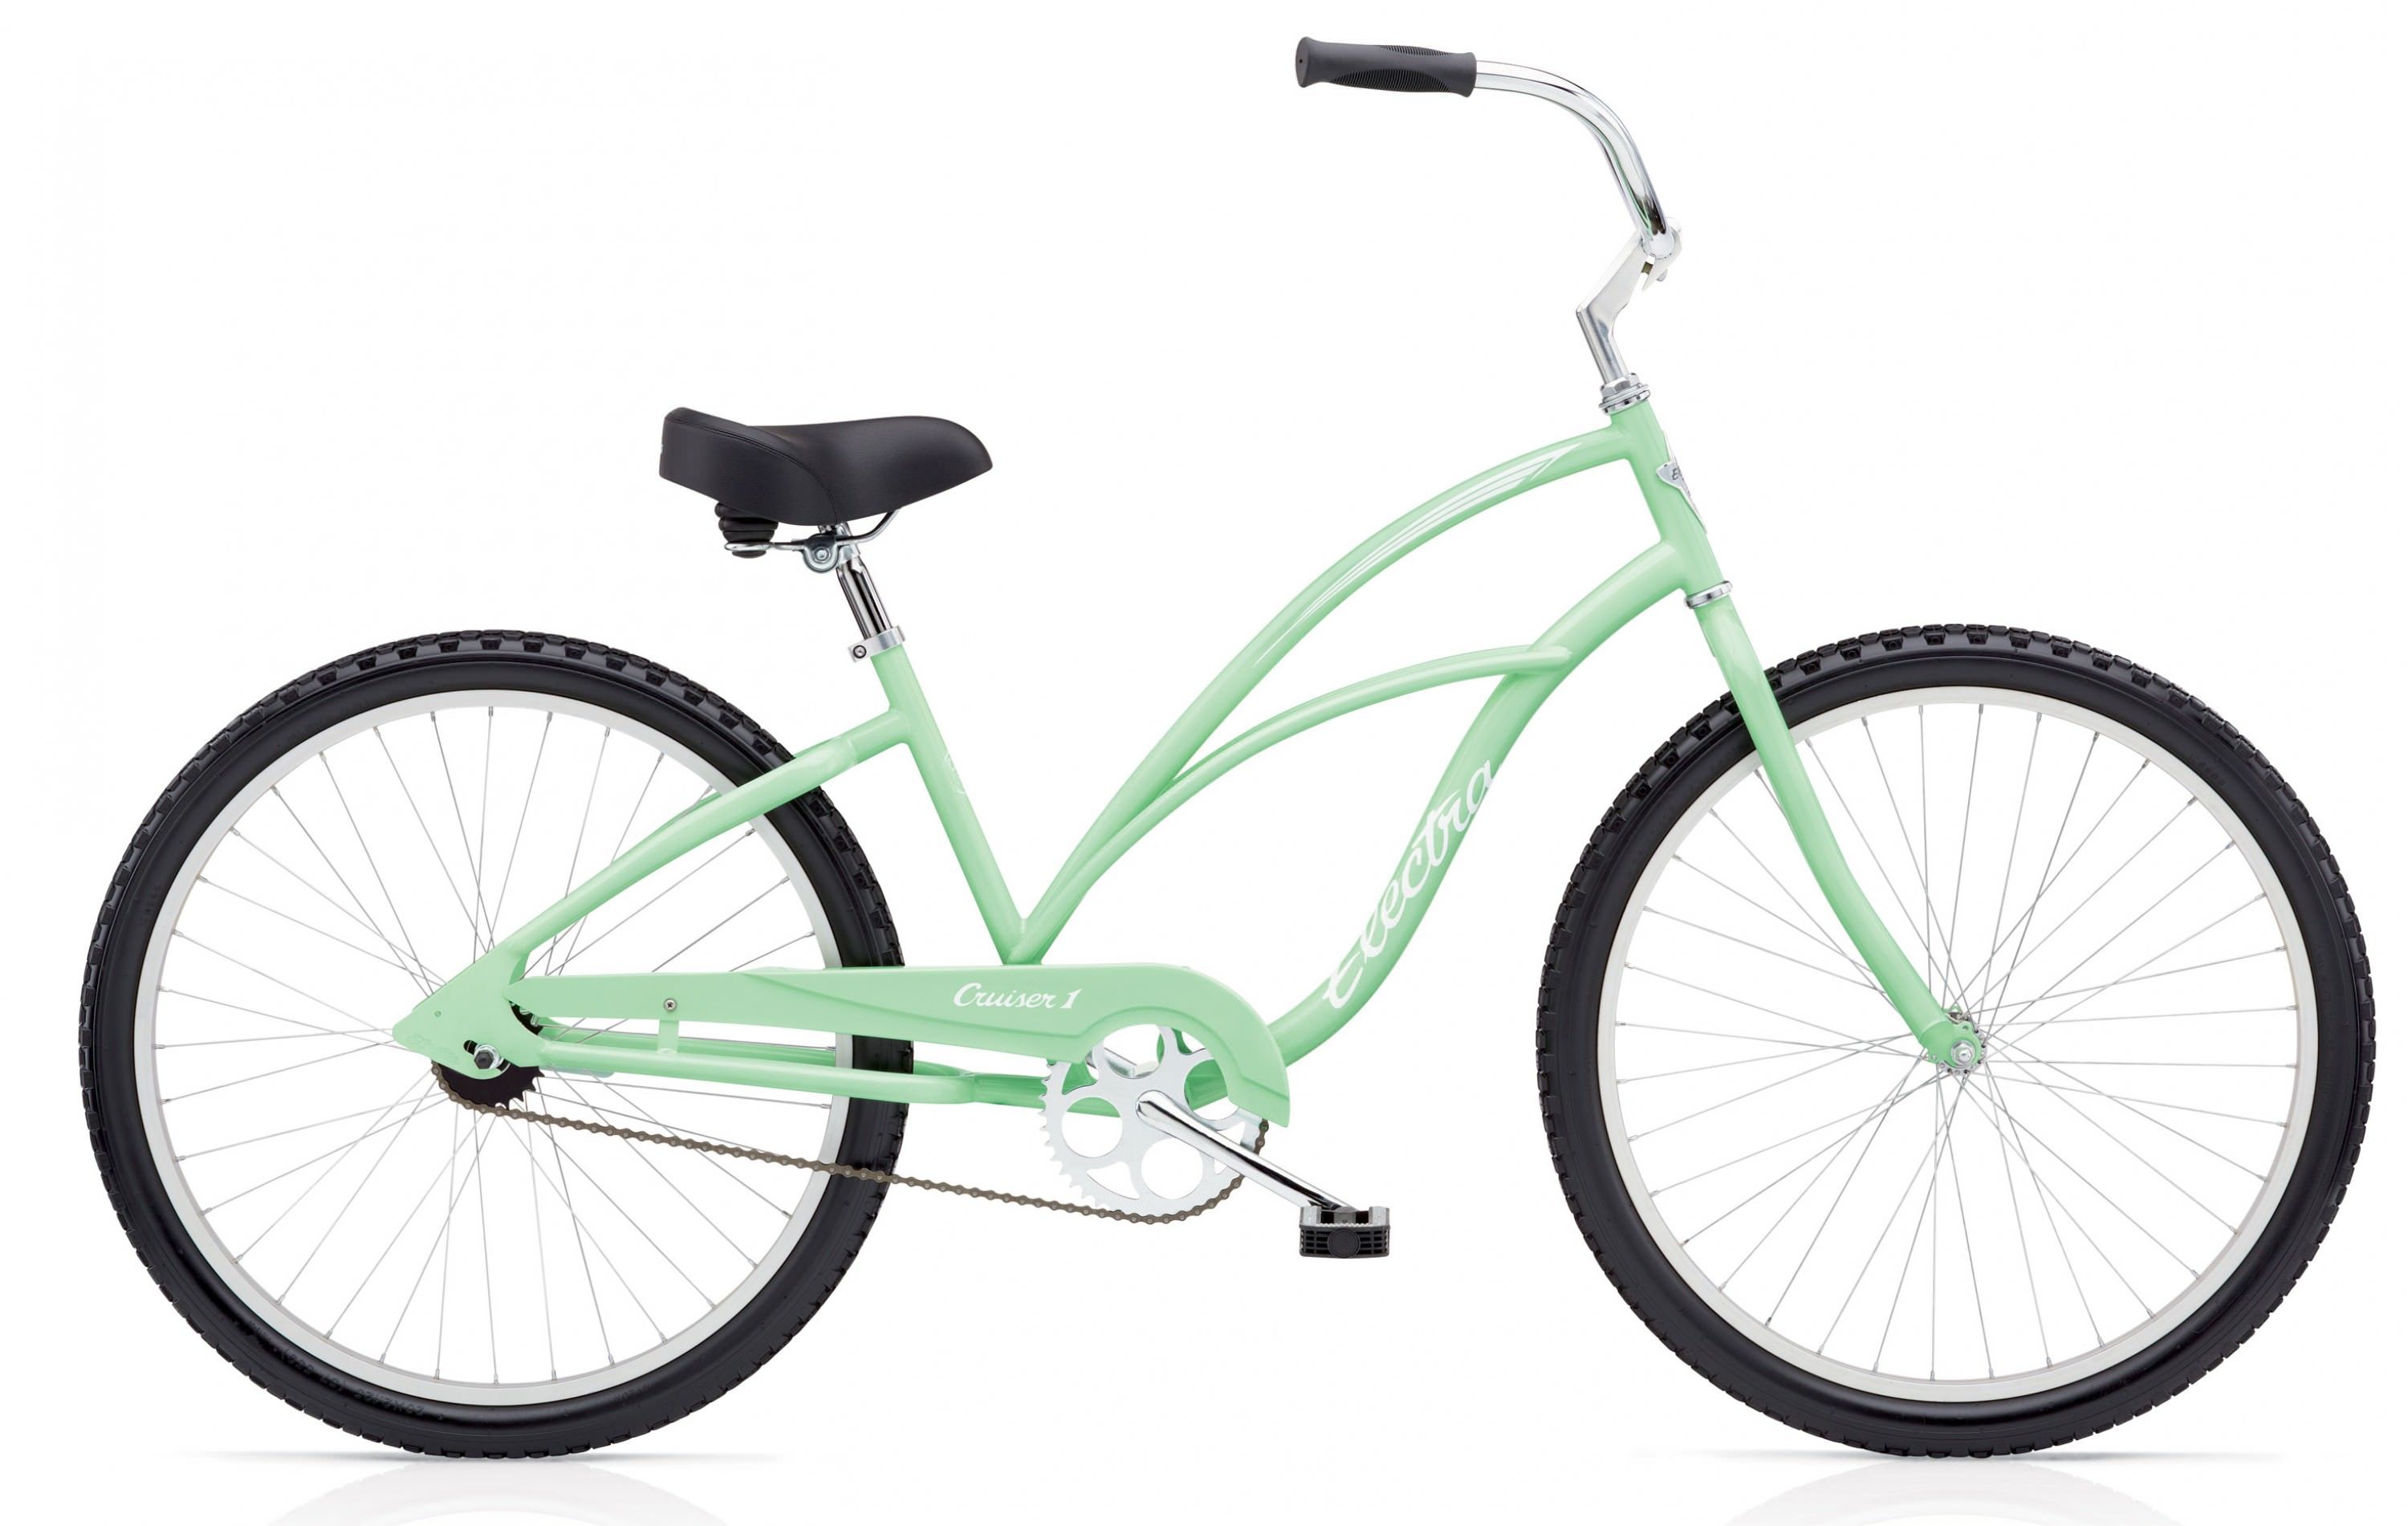  Велосипед Electra Cruiser 1 24 Ladies 2017